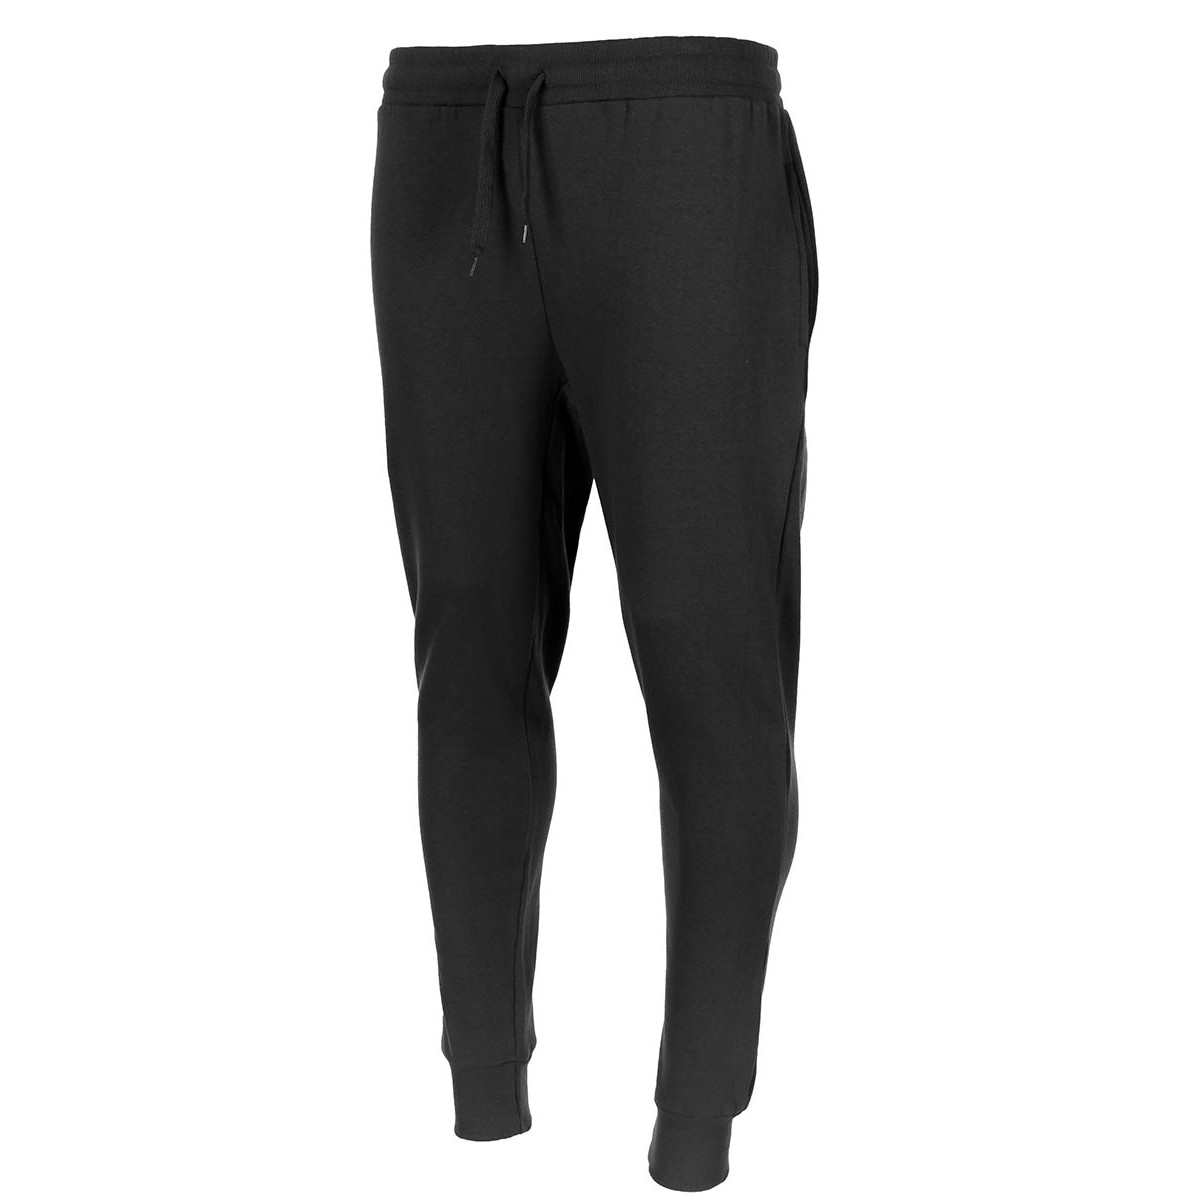 Kalhoty sportovní MFH Jogger - černé, XL